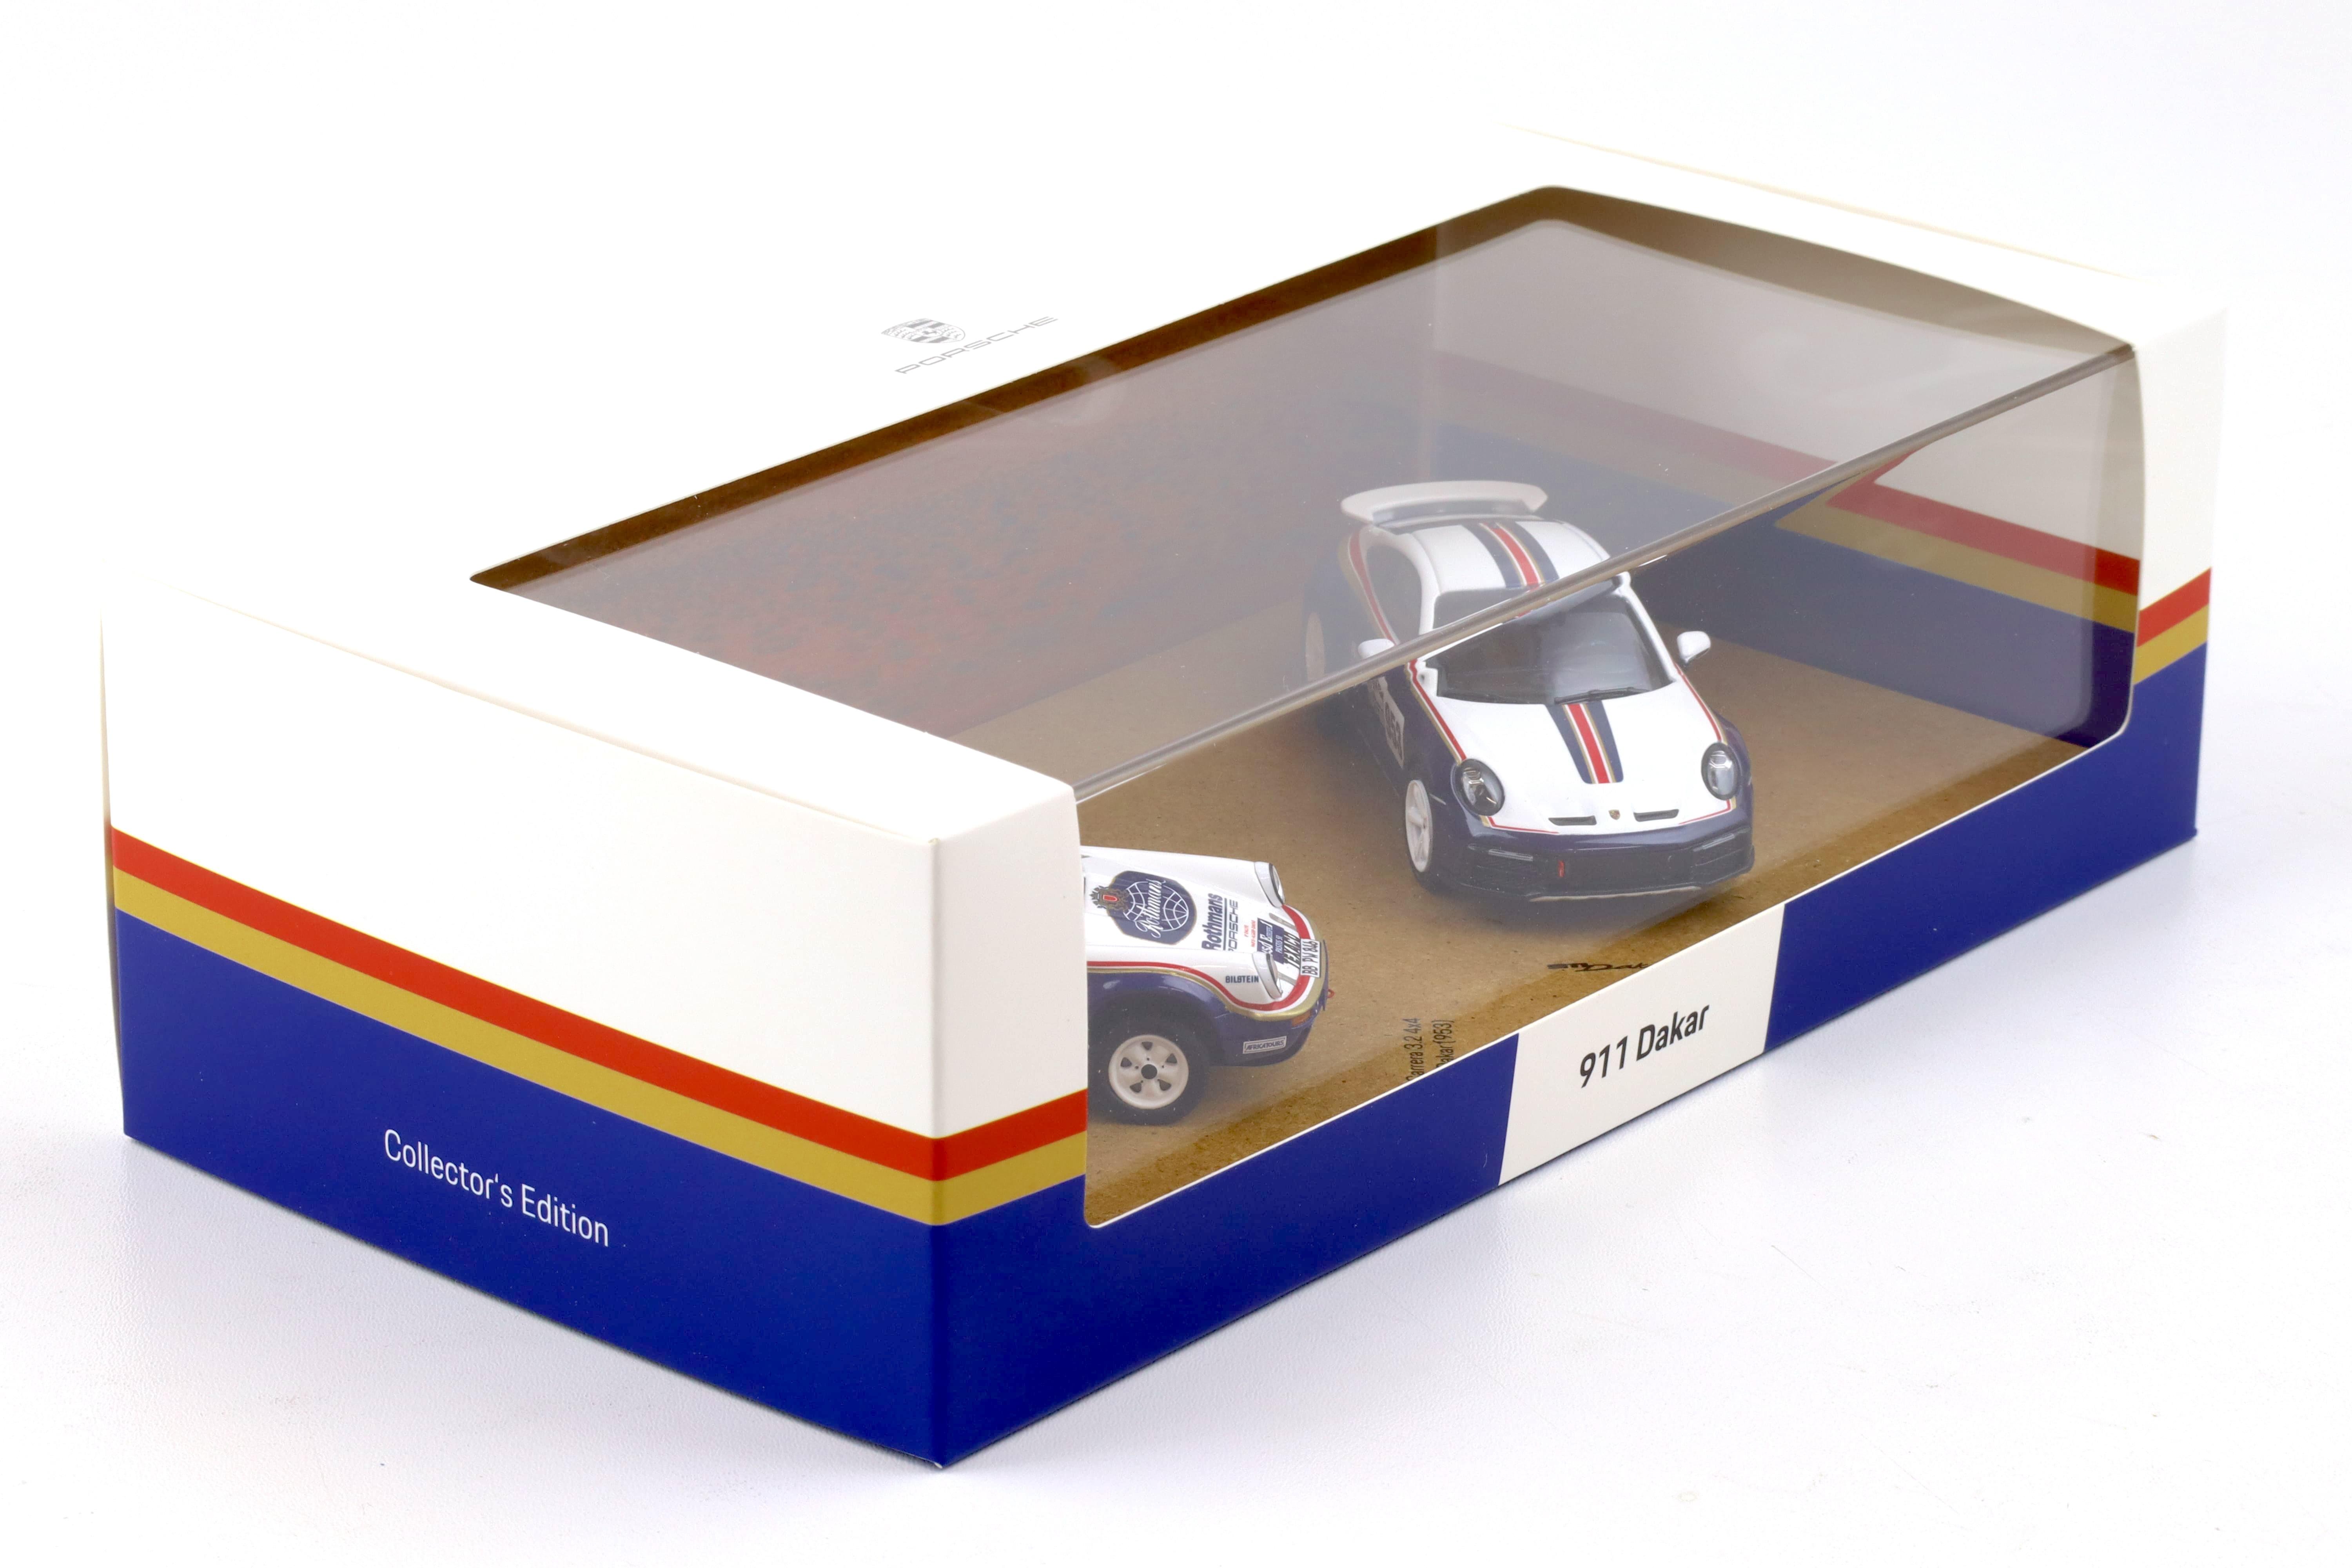 1:43 Spark Porsche 911 (992) Dakar + 953 Rally SET Rothmans Limited WAP DEALER